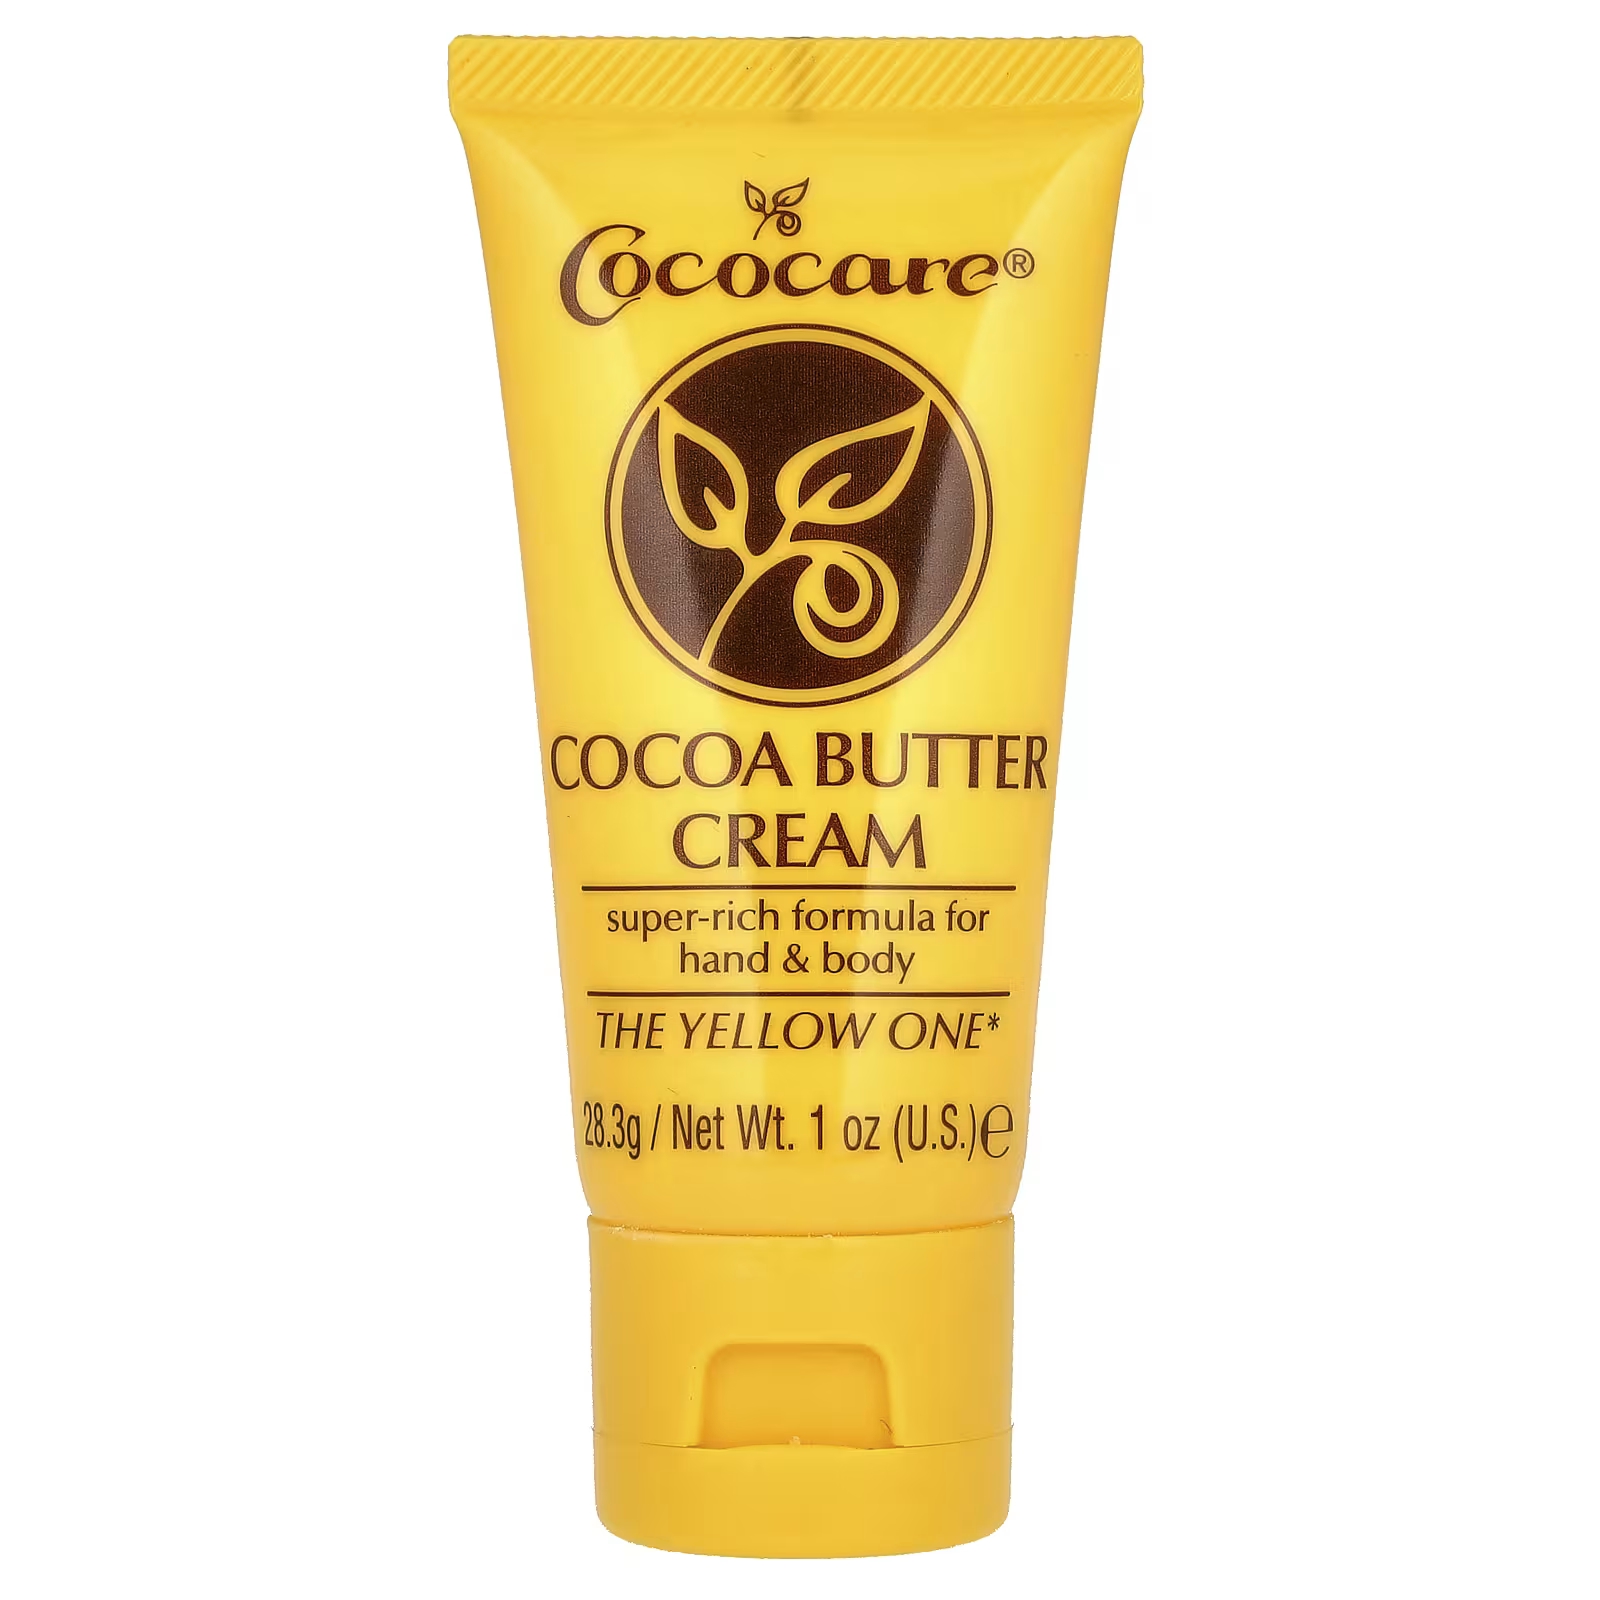 Крем Cococare с маслом какао, 28,3 г dimollaure 100 г нерафинированное масло какао натуральное органическое эфирное масло для массажа тела косметика для ухода за кожей сырье